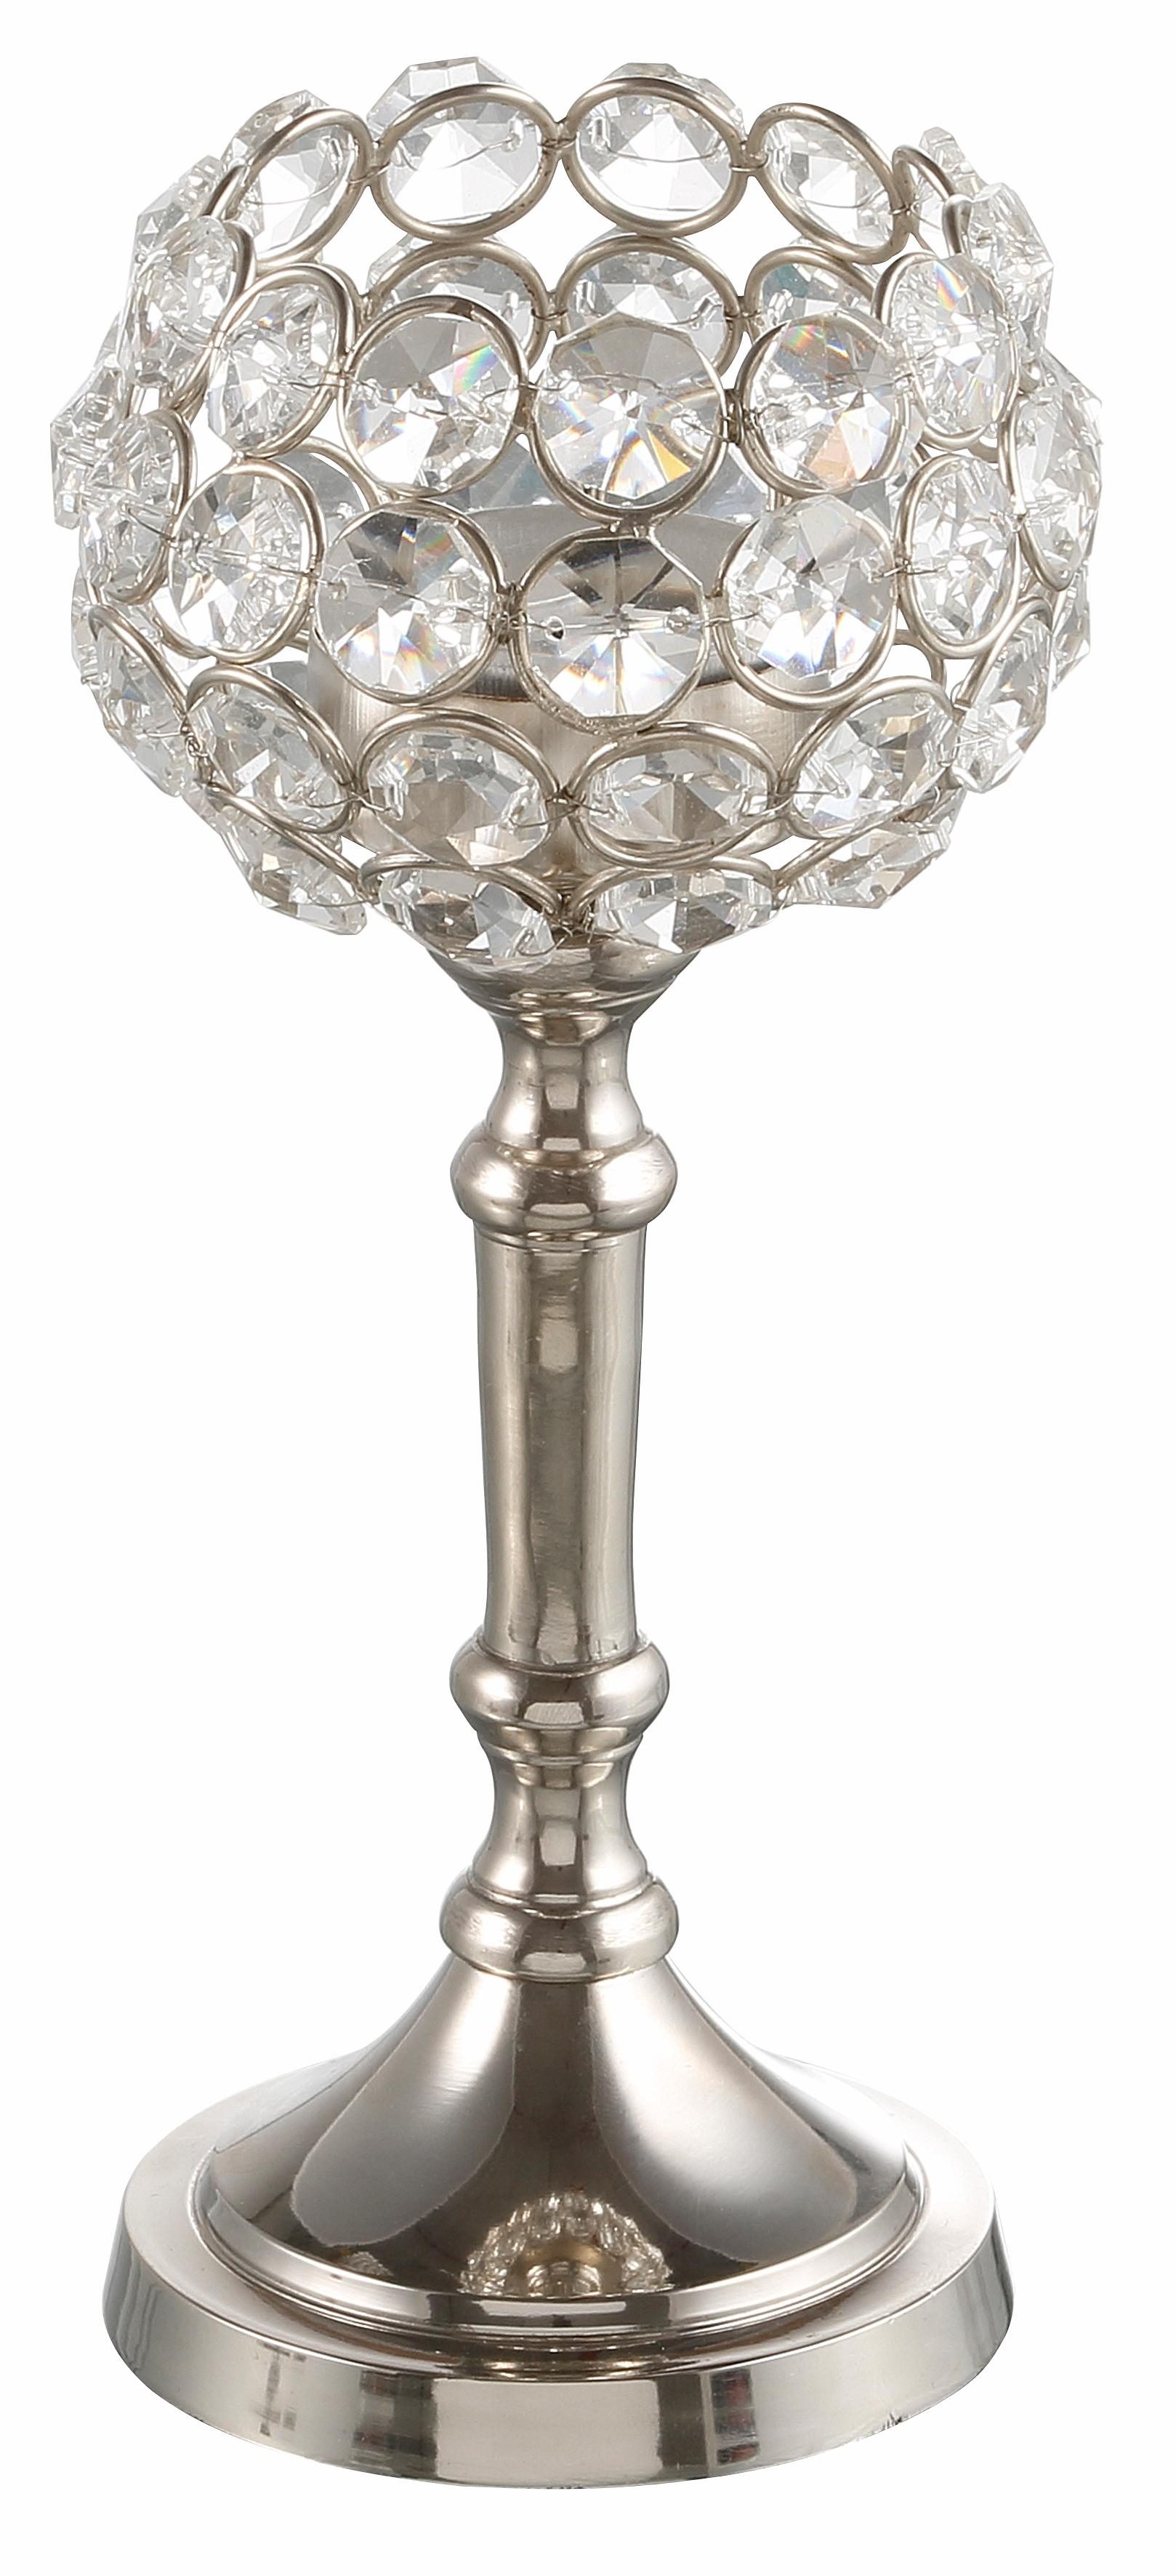 Kristall Votivglas Teelicht Kerzenhalter Indoor Elegant Hochzeitslicht 